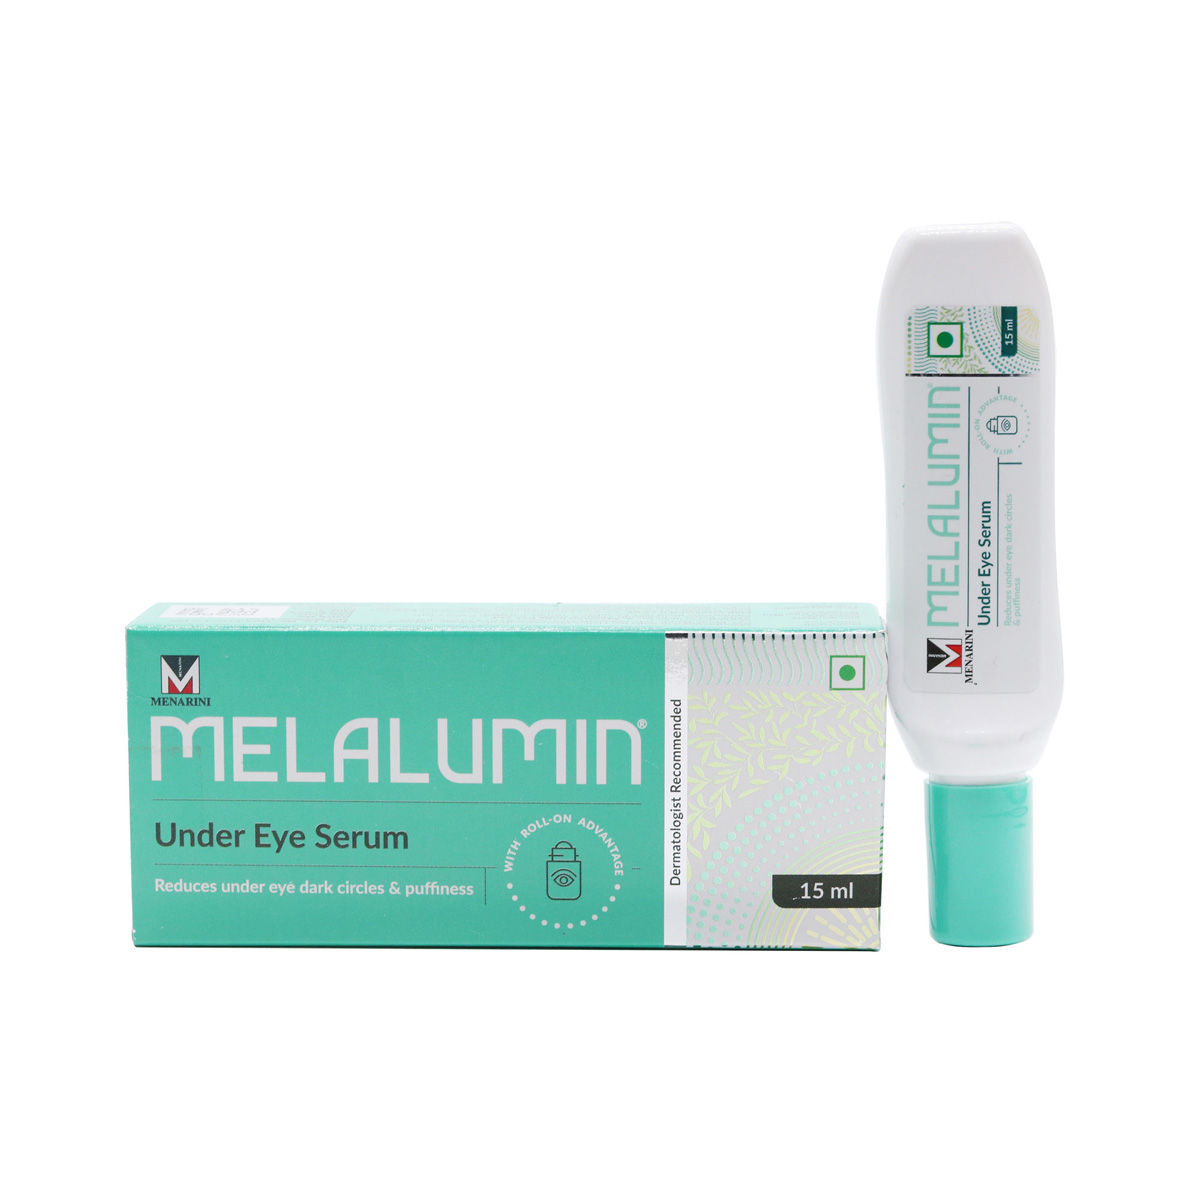 Buy Melalumin Under Eye Serum 15 ml Online